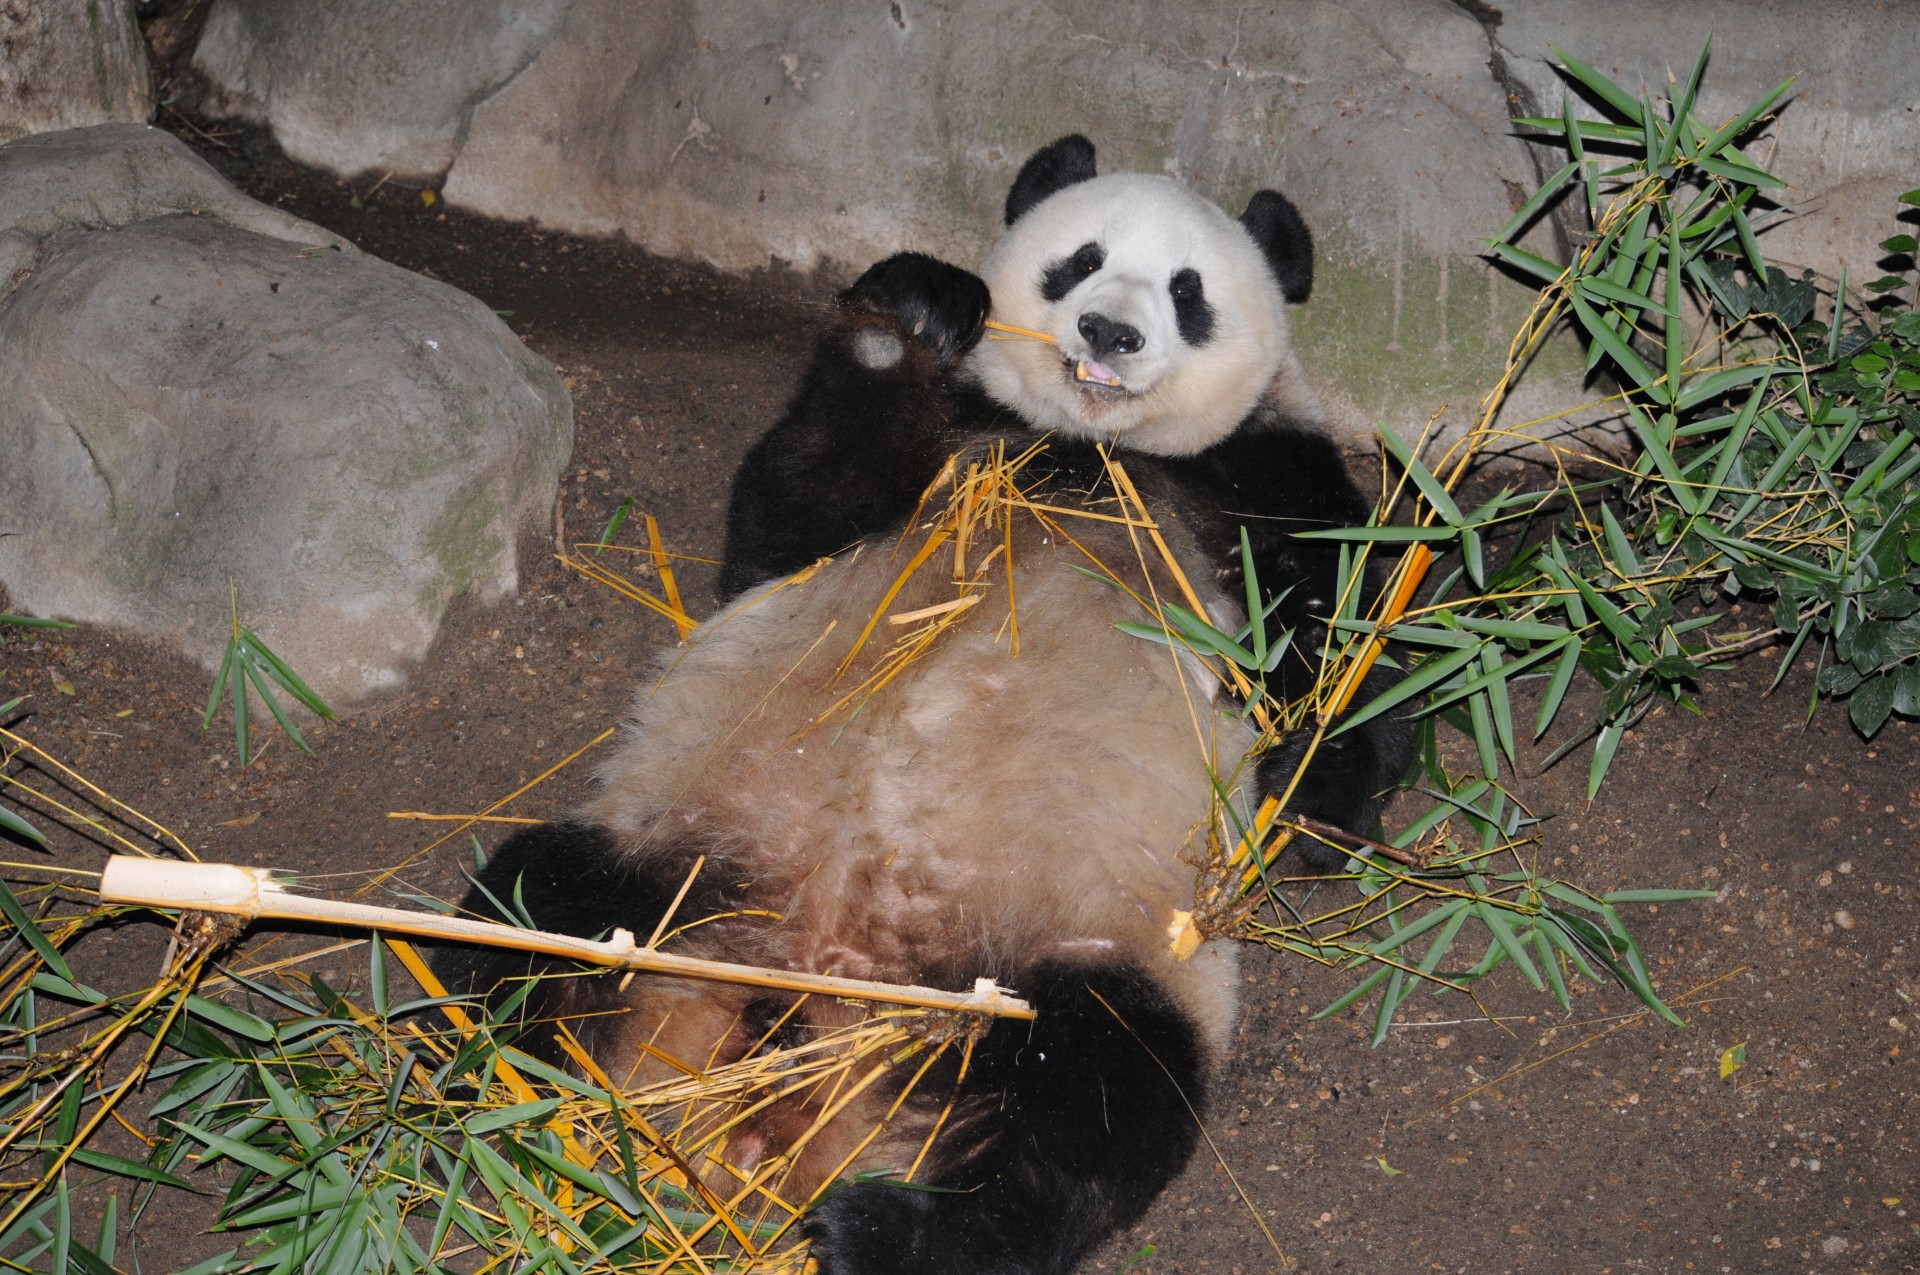 panda bear bear zoo free photo